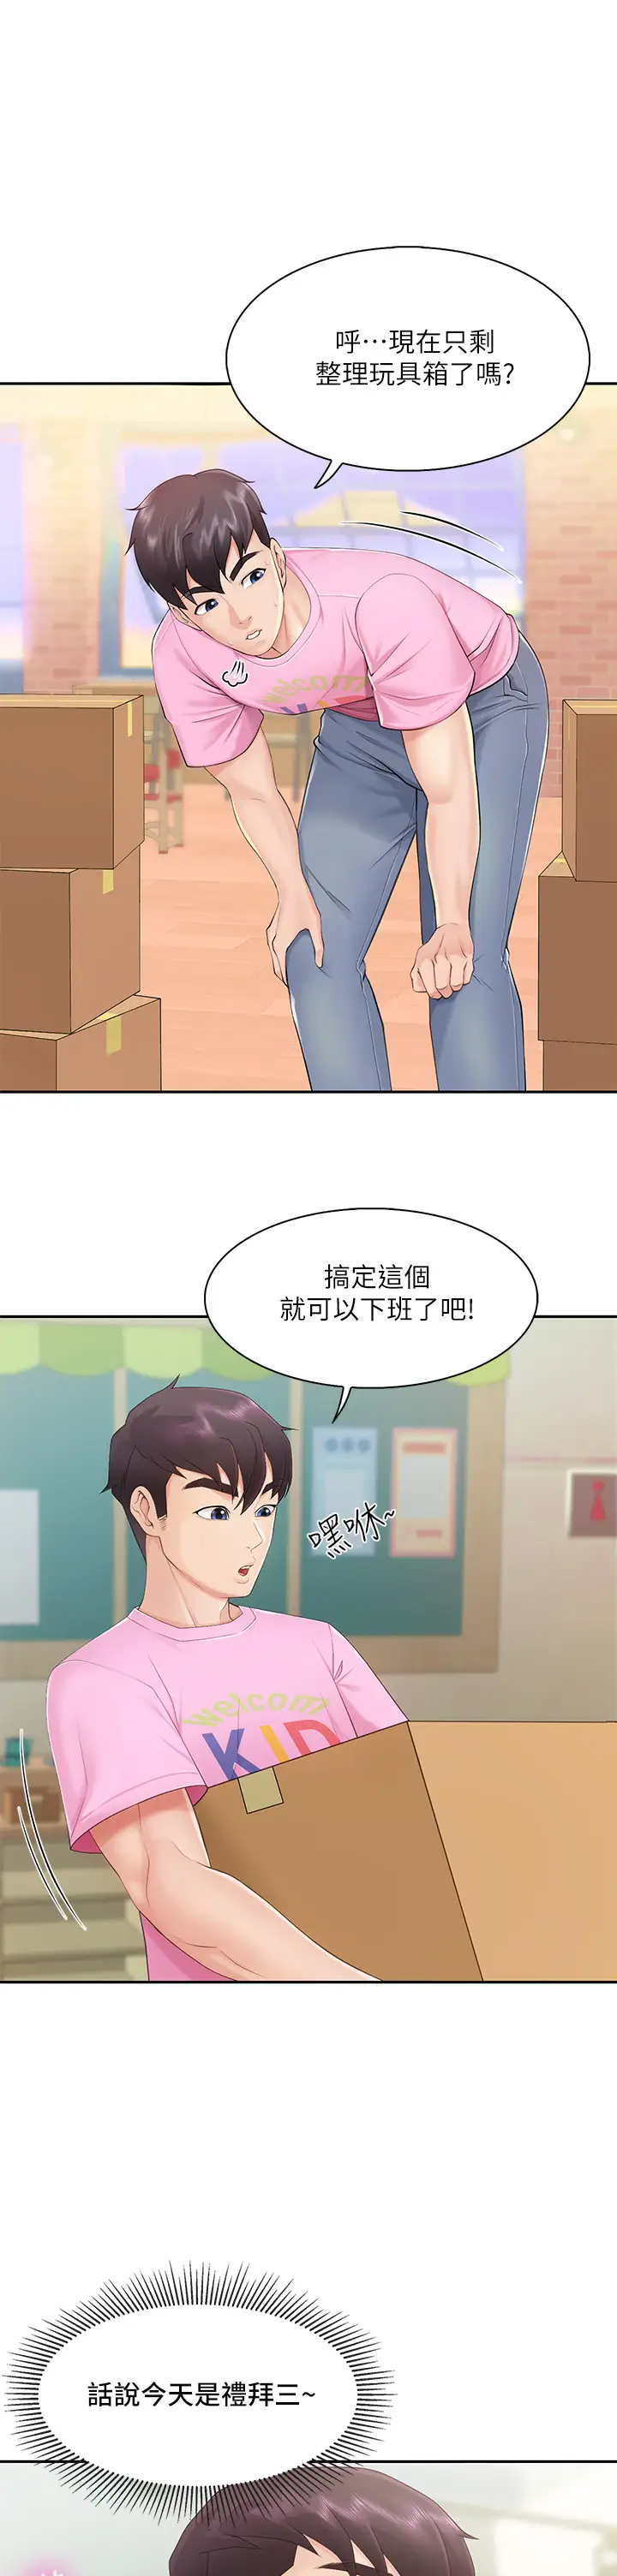 韩国污漫画 親子餐廳的媽媽們 第1话 少妇的魅惑姿态 57